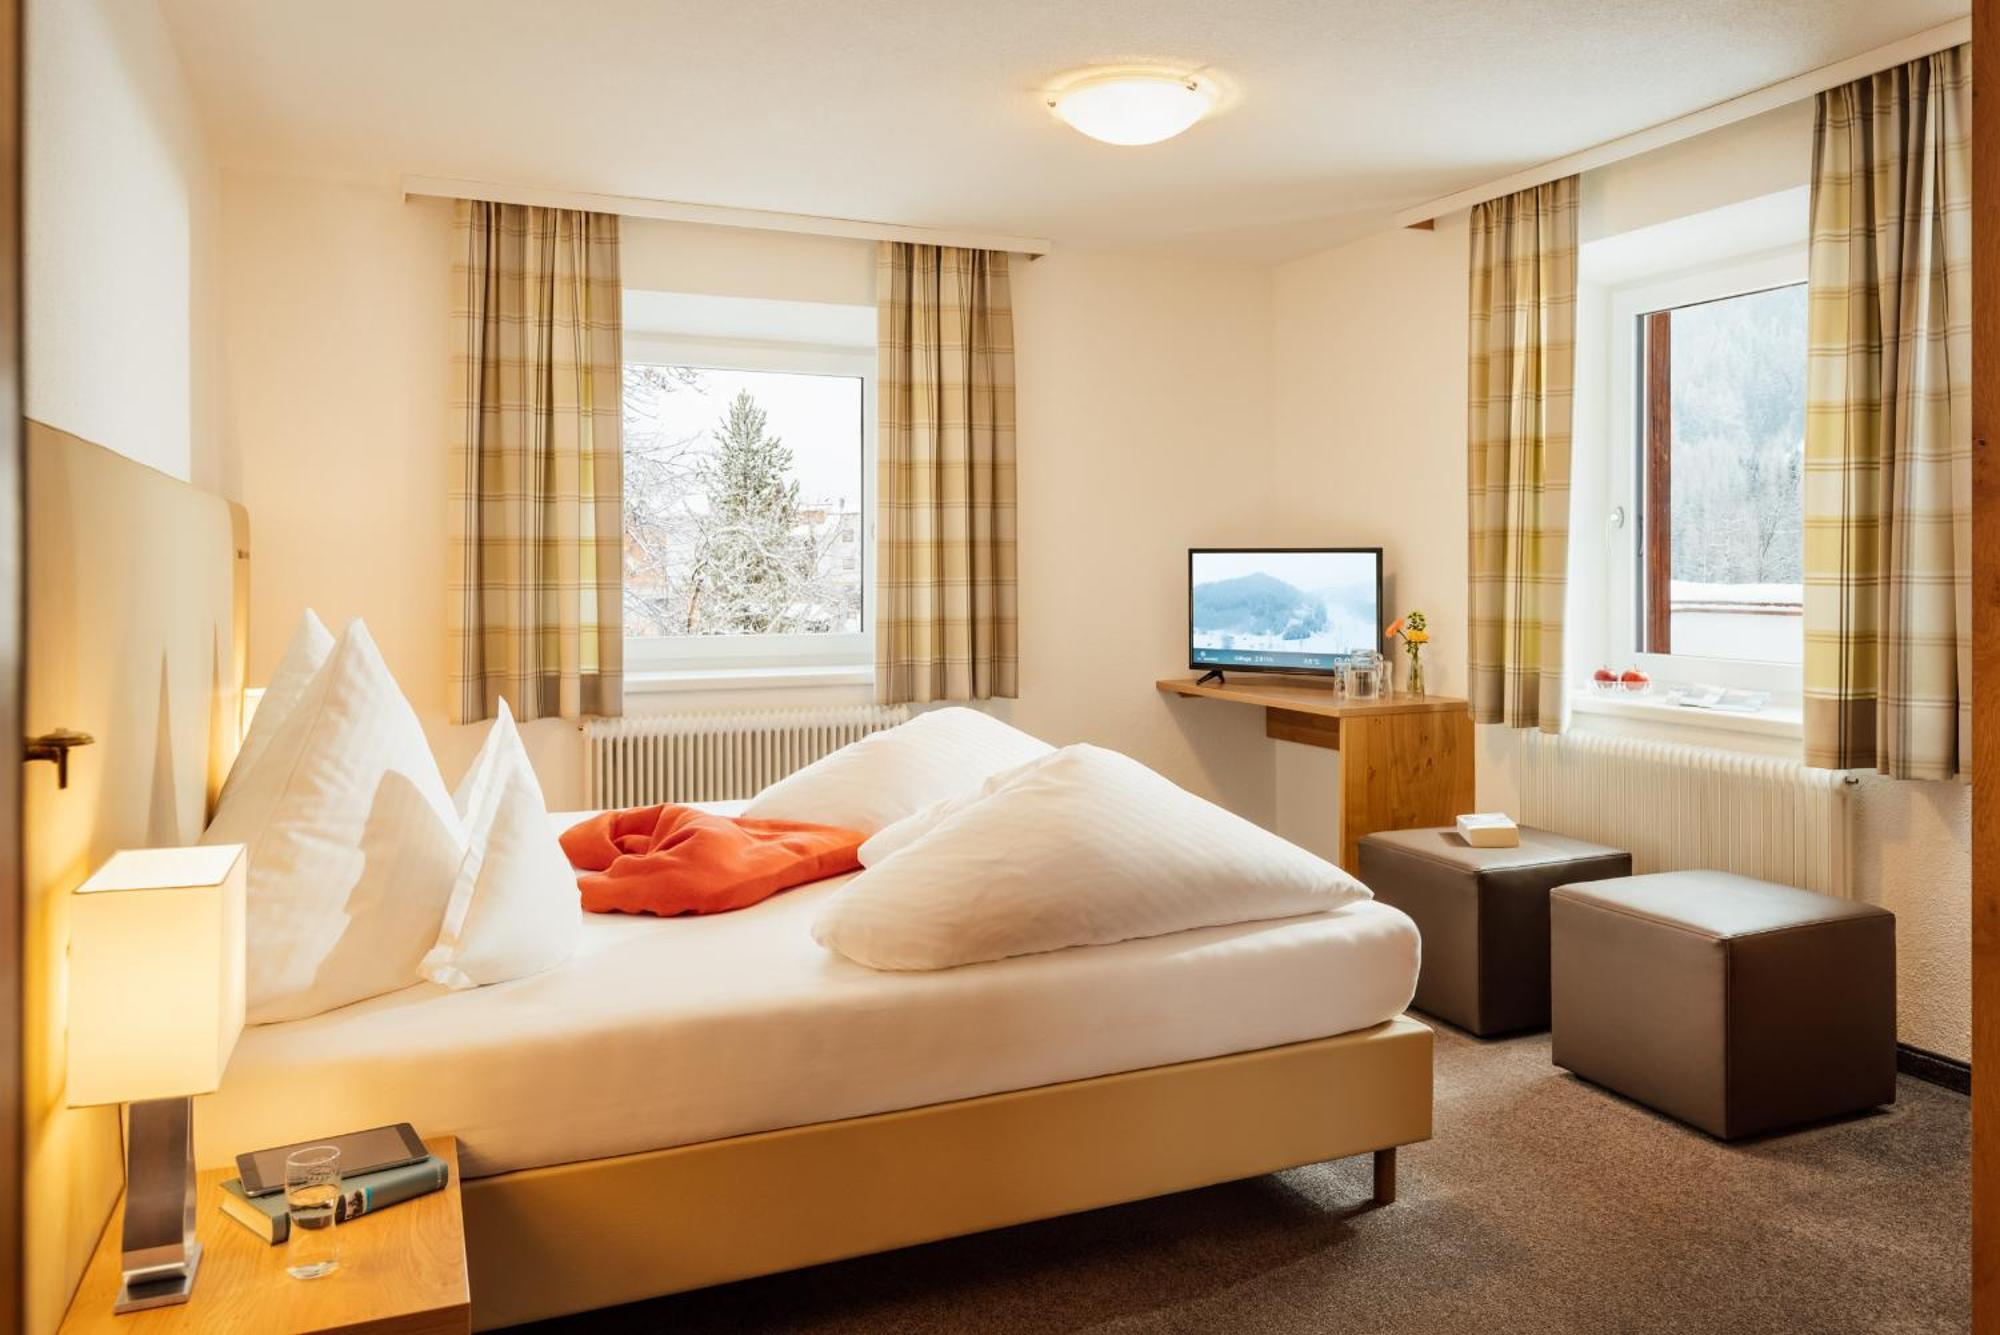 Landhaus Albert Murr - Bed & Breakfast Sankt Anton am Arlberg Exteriör bild